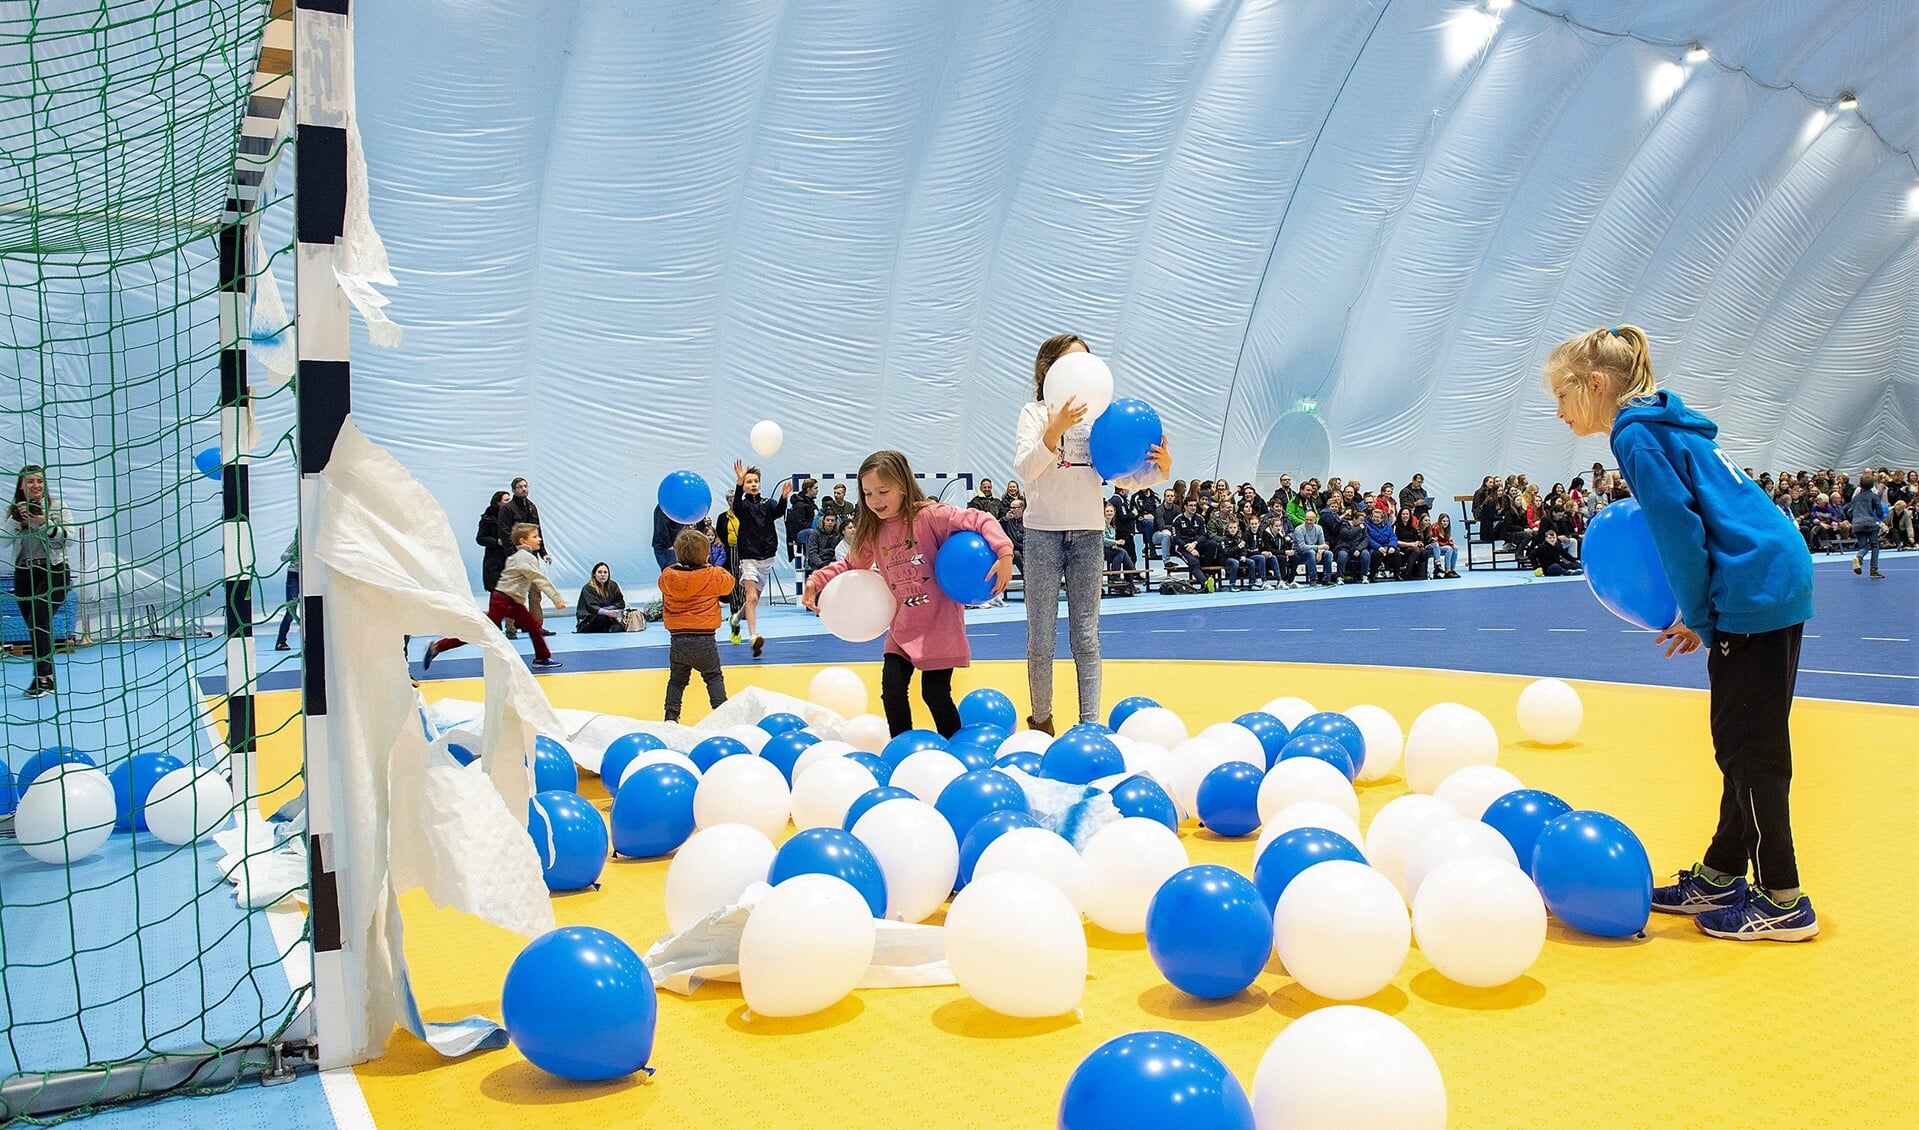 Jeugdleden vanEHC bevrijdden wat ballonnen uit een doel, waarmee de nieuwe ballonhal was geopend (foto: Michel Groen).